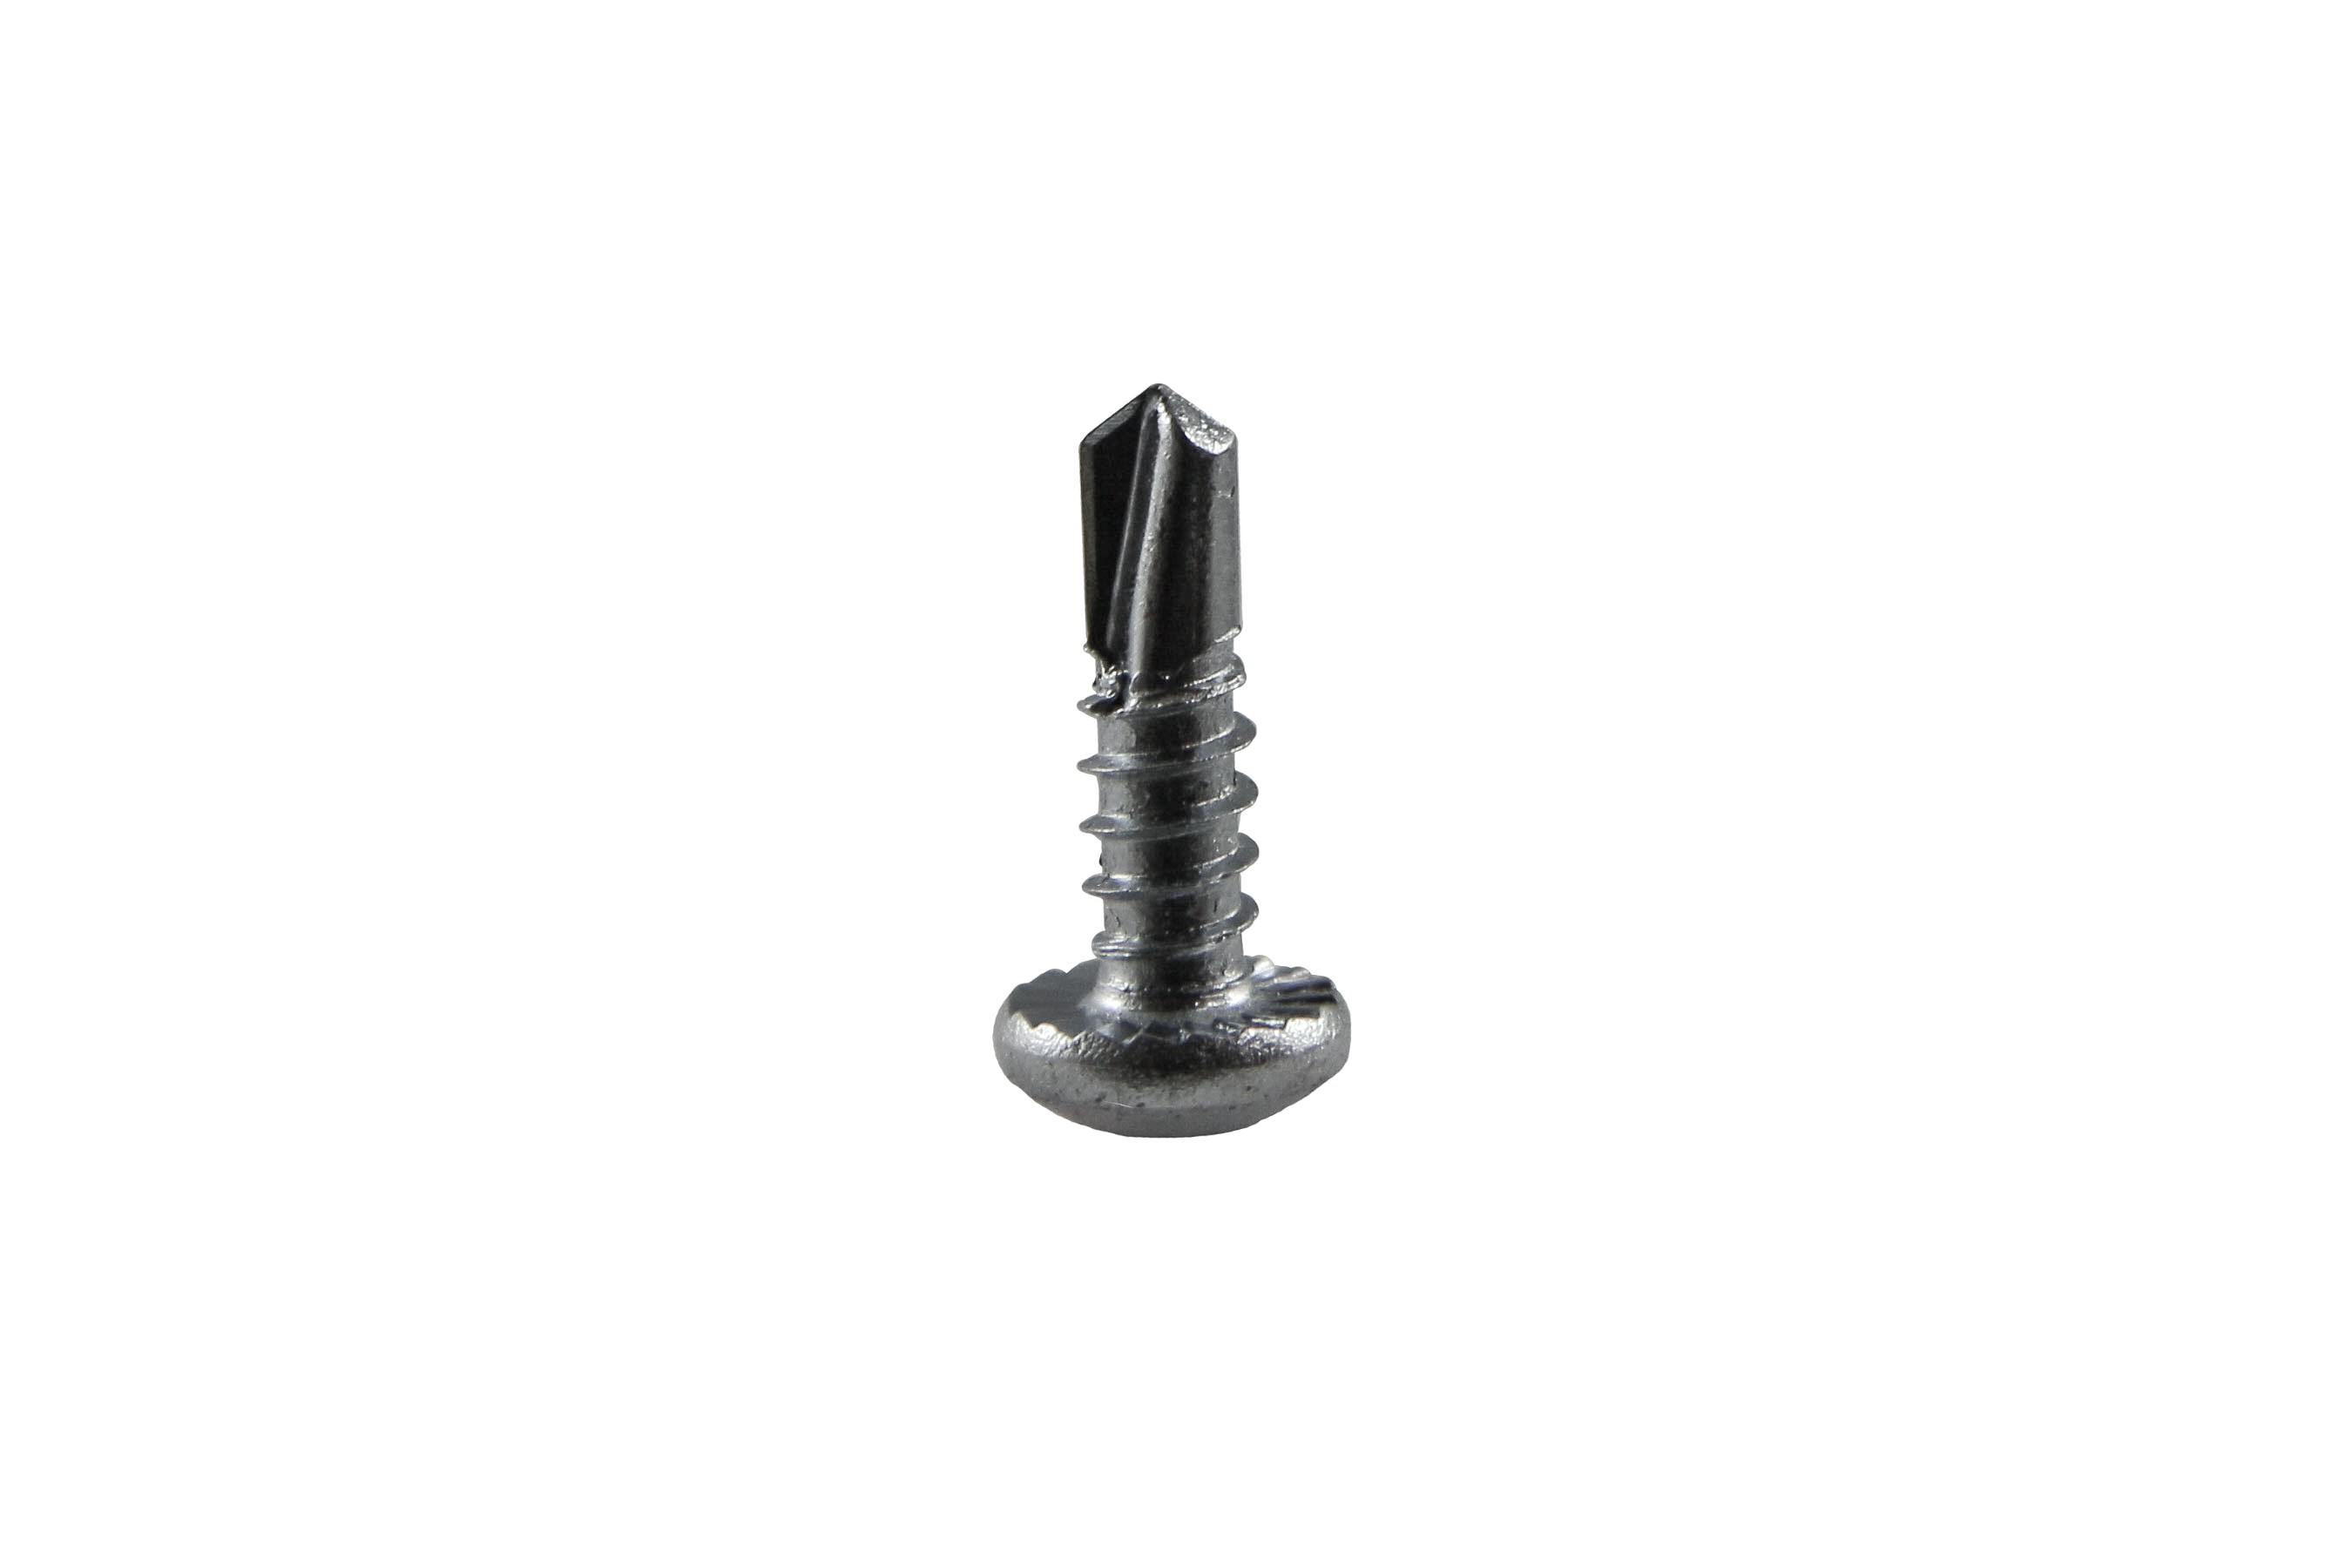 Drilling screw 5,5 x 19 mm